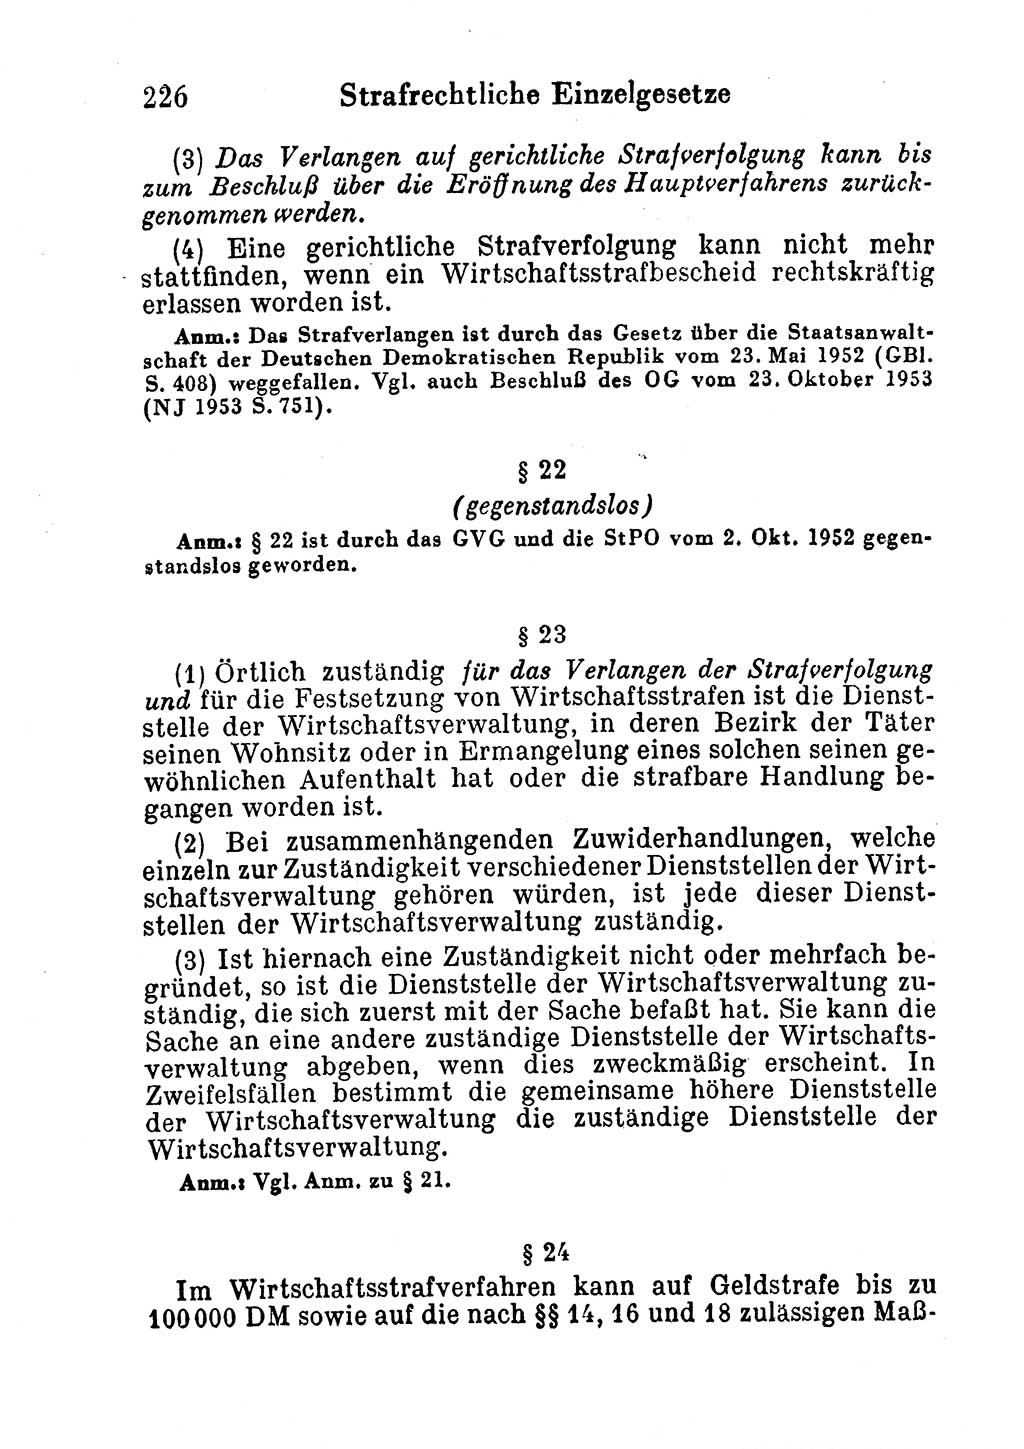 Strafgesetzbuch (StGB) und andere Strafgesetze [Deutsche Demokratische Republik (DDR)] 1956, Seite 226 (StGB Strafges. DDR 1956, S. 226)